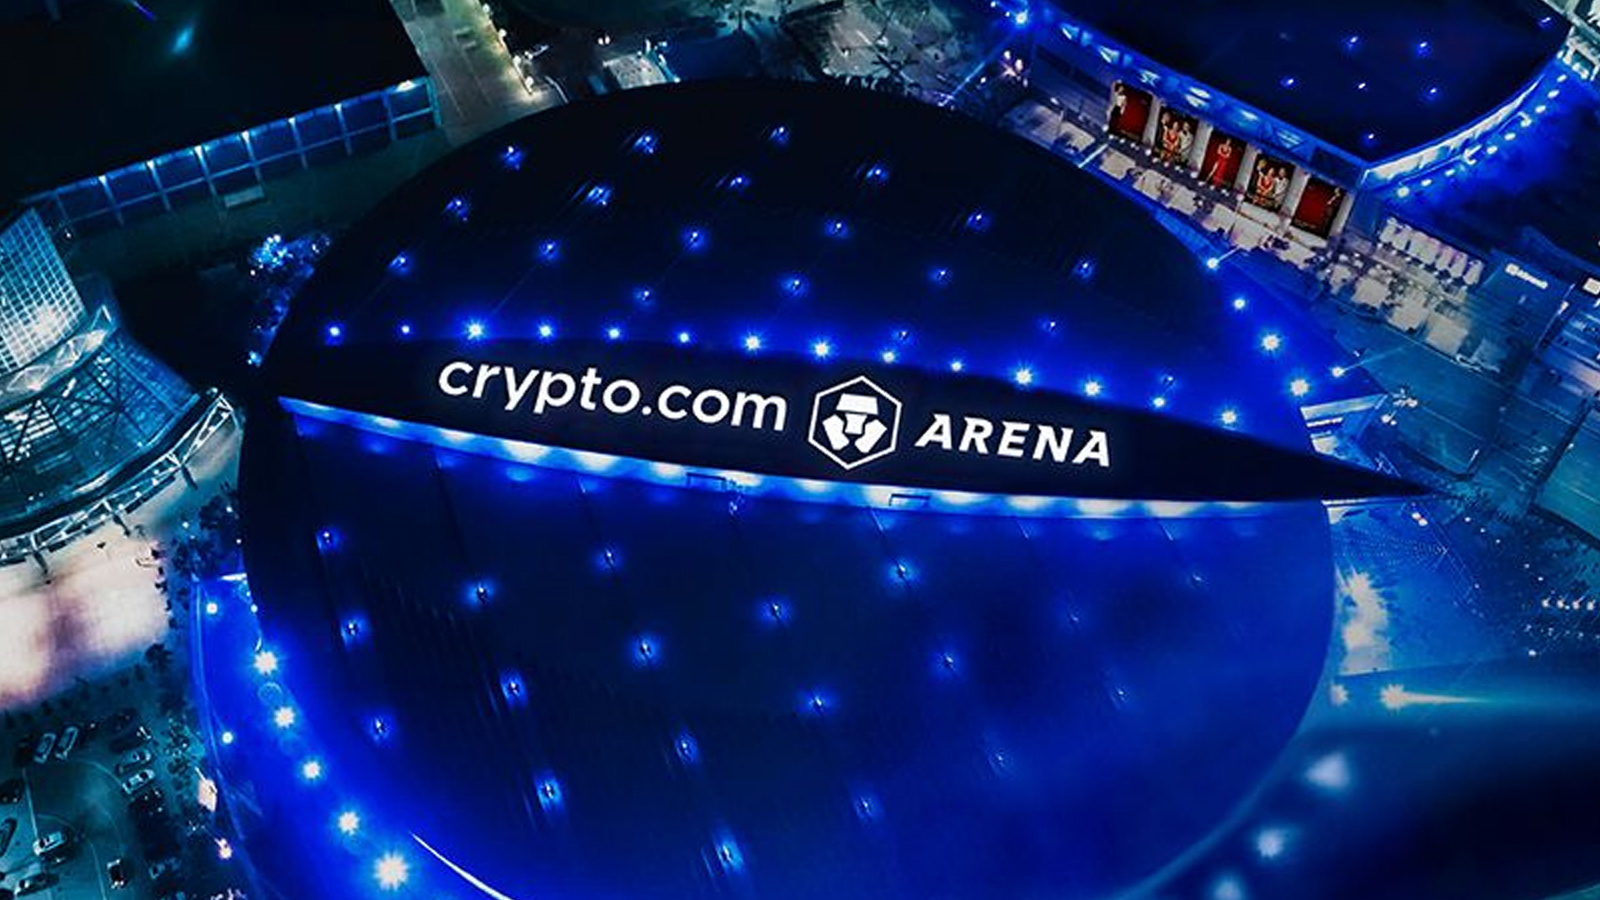 Crypto.com arena